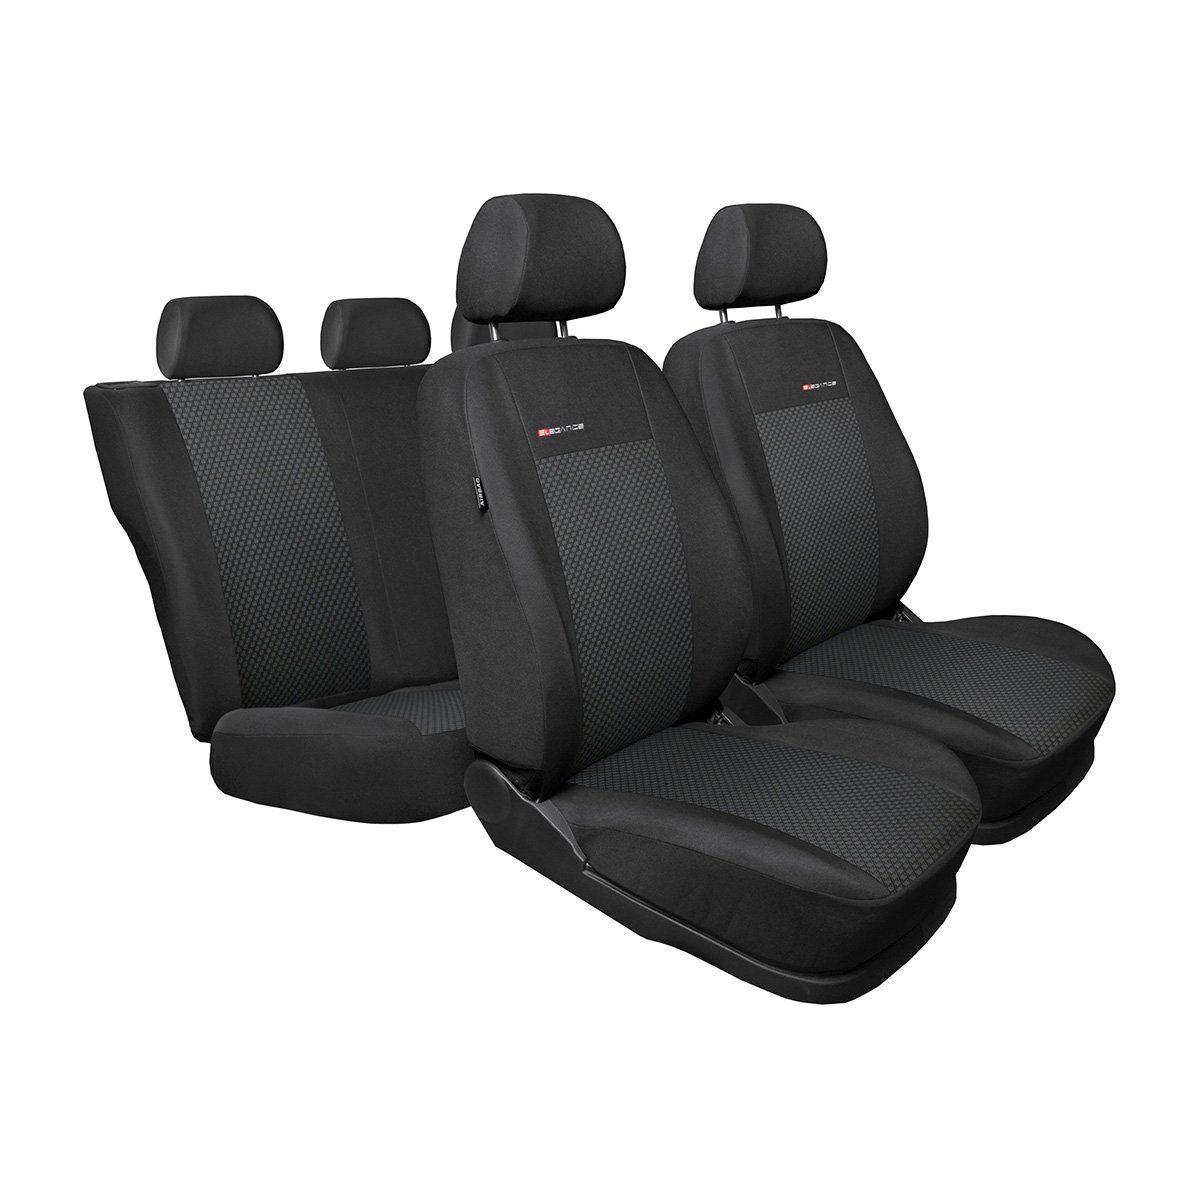 Mossa - Maßgeschneiderte Sitzbezüge Auto kompatibel mit Skoda Rapid Liftback, Spaceback (2012-2019) - Bezug für die hintere Armlehne - Autositzbezüge Schonbezüge für Autositze - E3 von Mossa